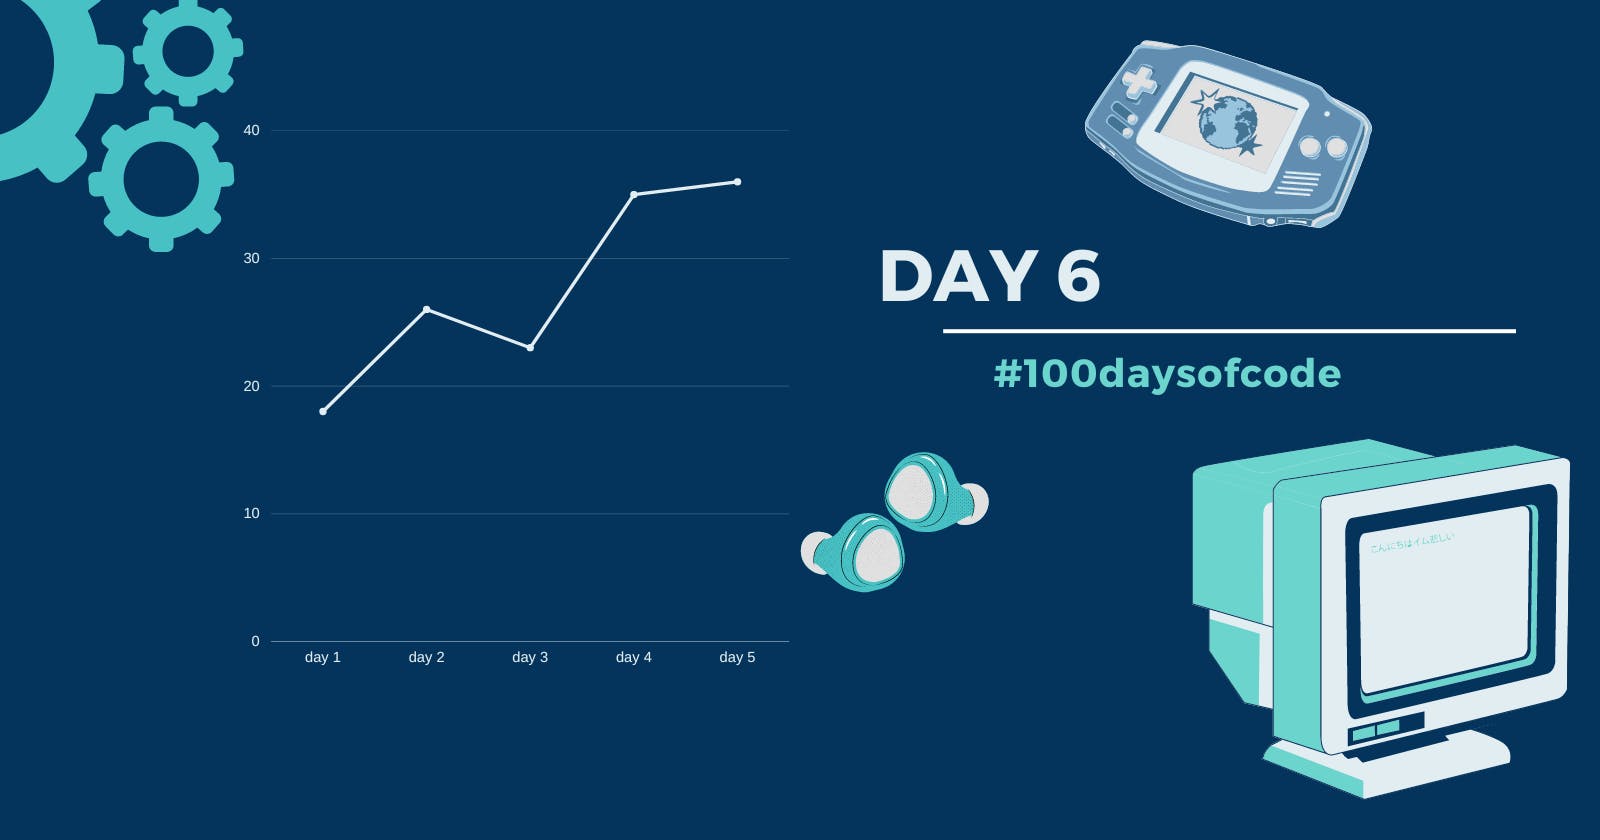 Day 6 in #100daysofcode challenge